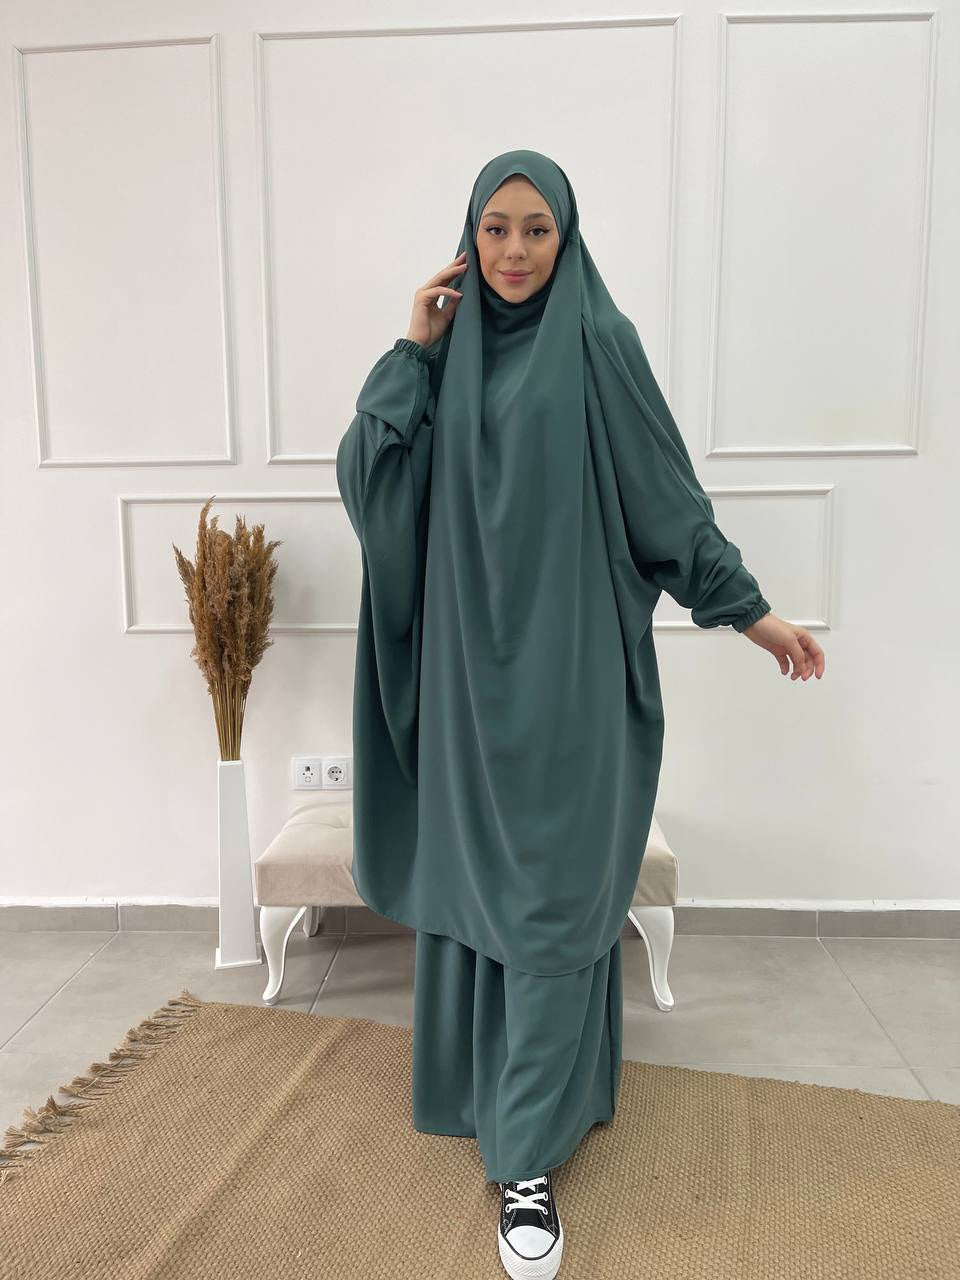 Jilbab qualité supérieure - Turquoise